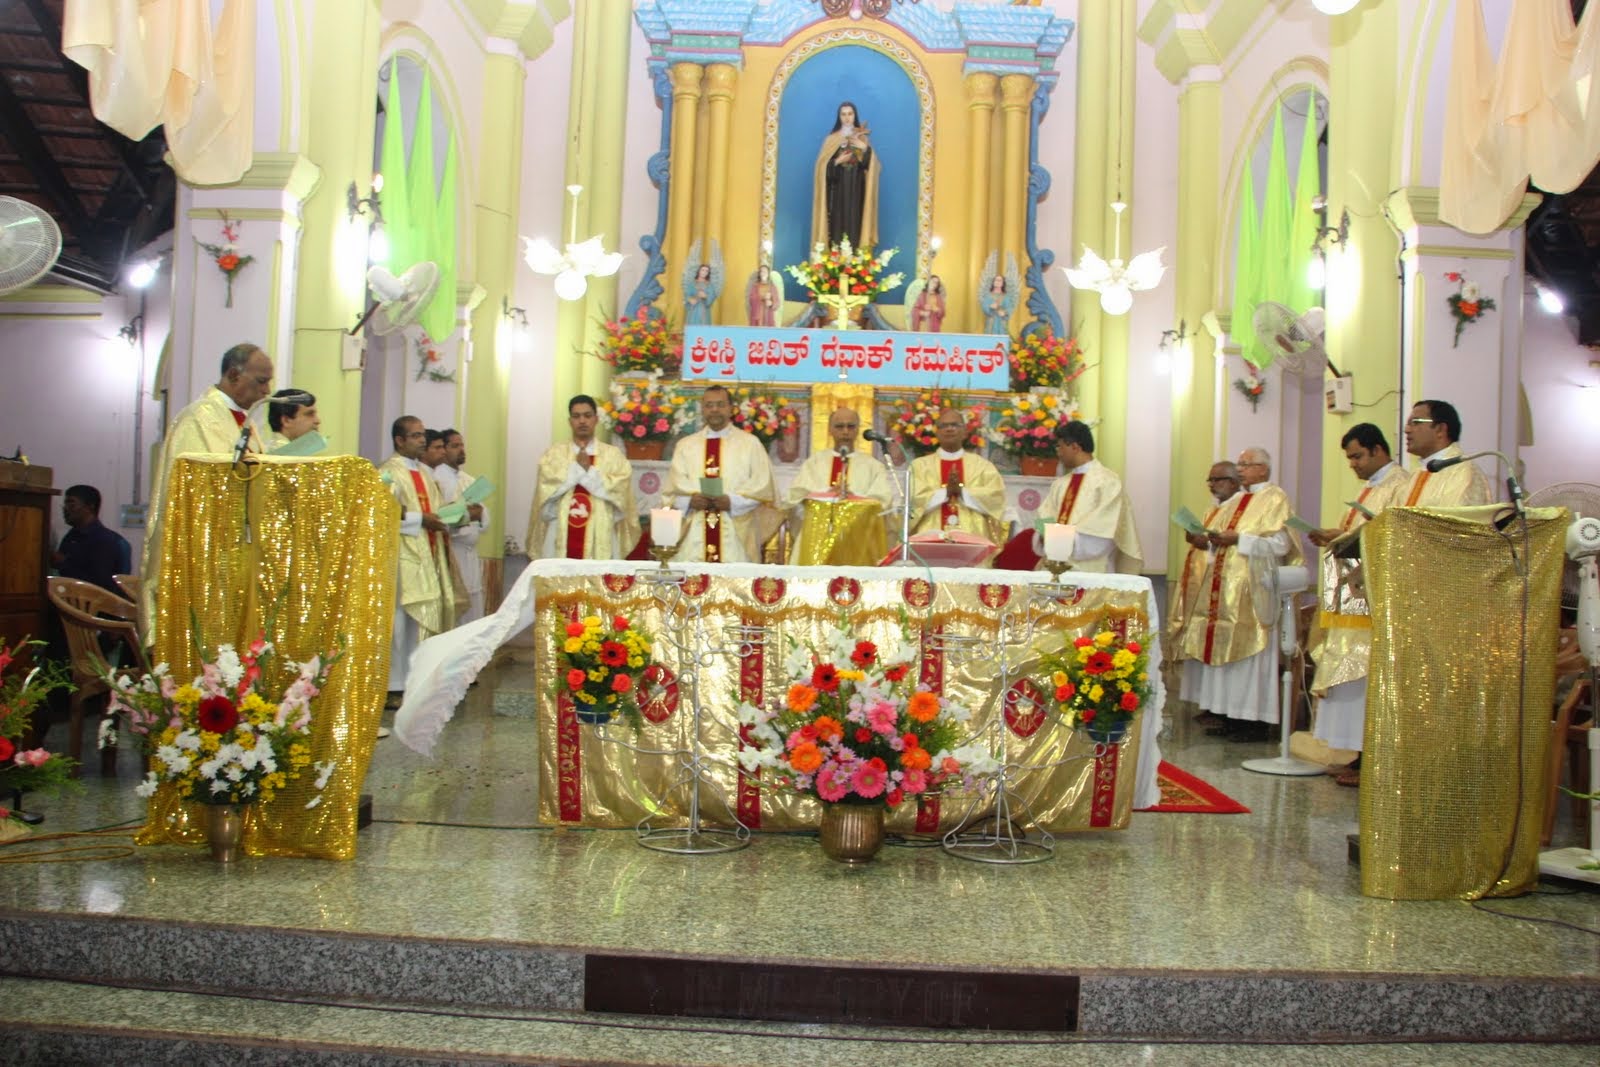 Kemmannu: St. Theresa Church Kemmannu celebrates Annual Parish Feast with devotion